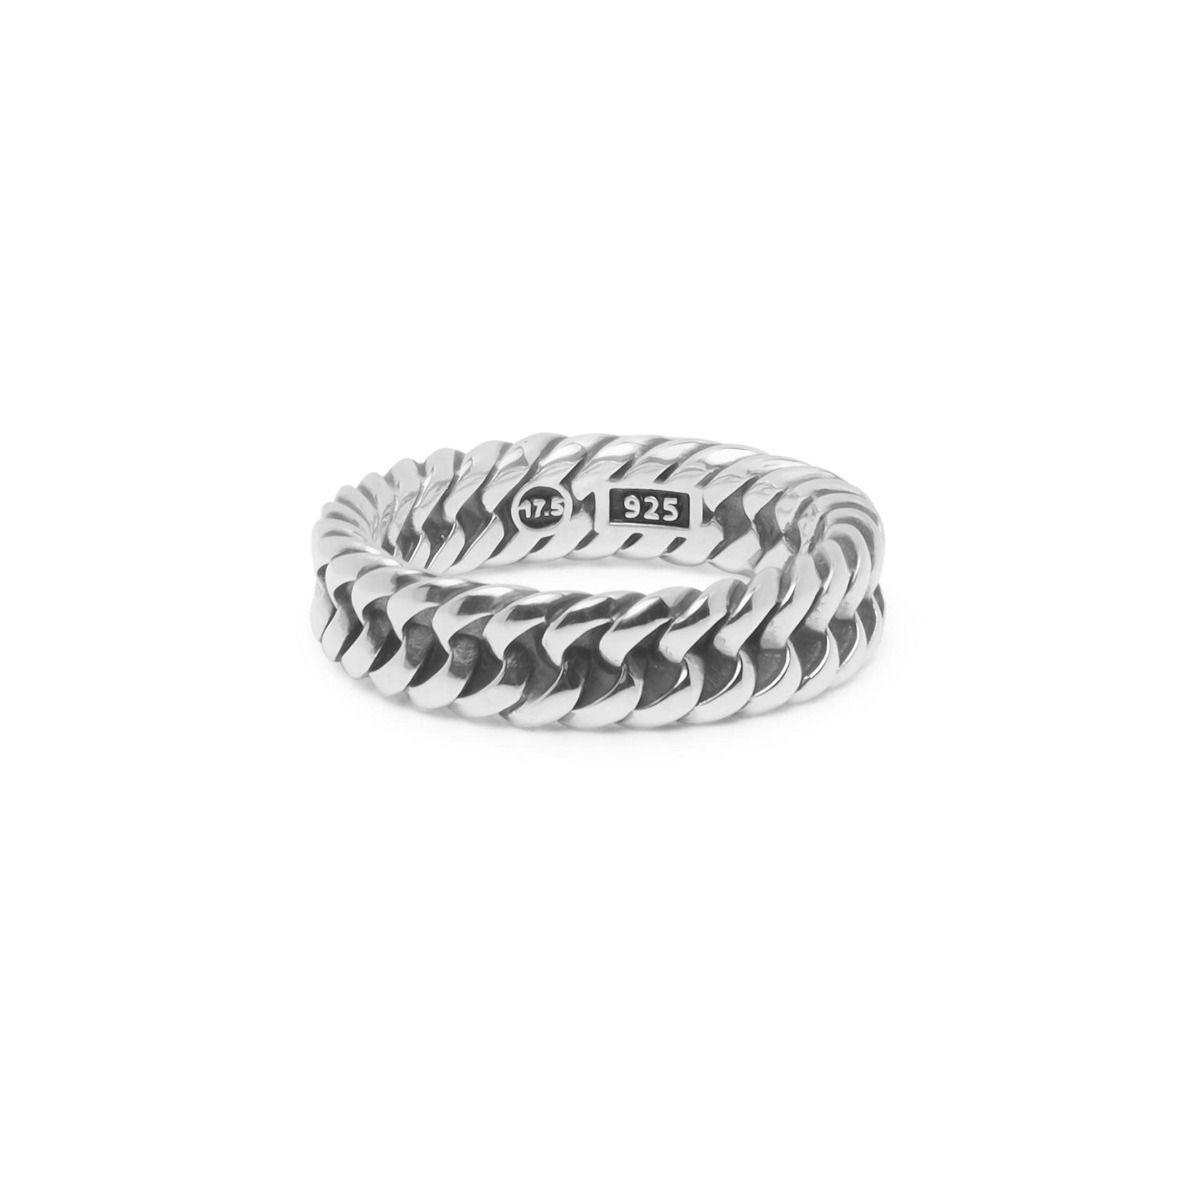 Buddha to Buddha - 614 - Chain XS Ring Silver - Brunott Juwelier